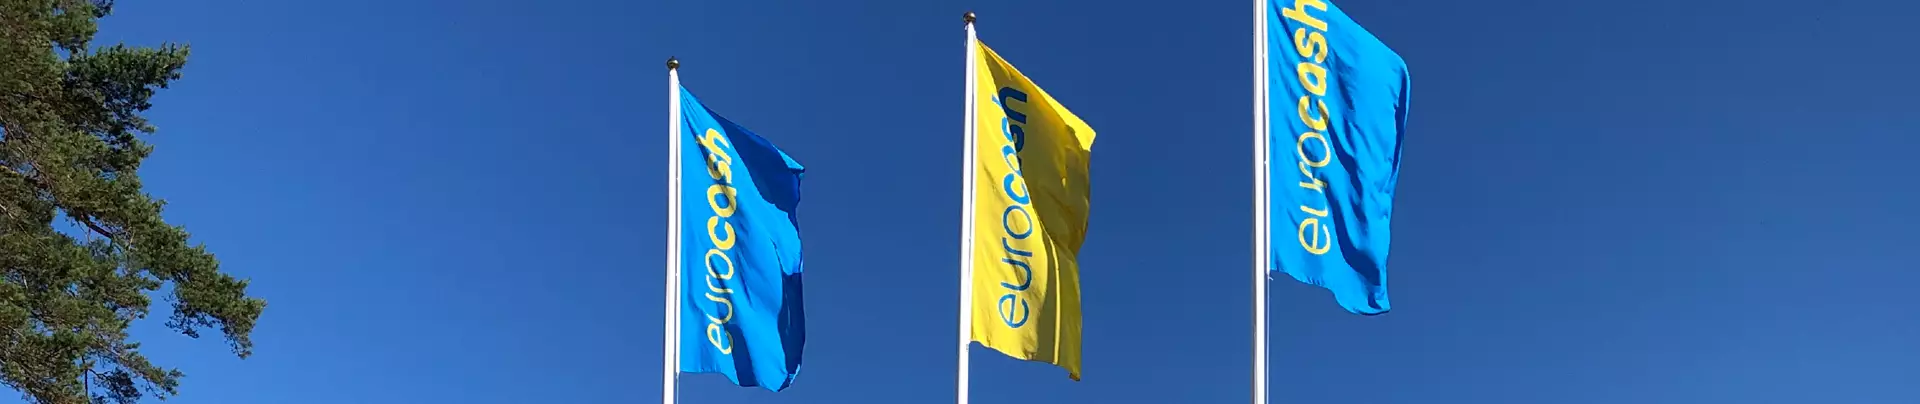 Eurocash flaggor i blått och gult